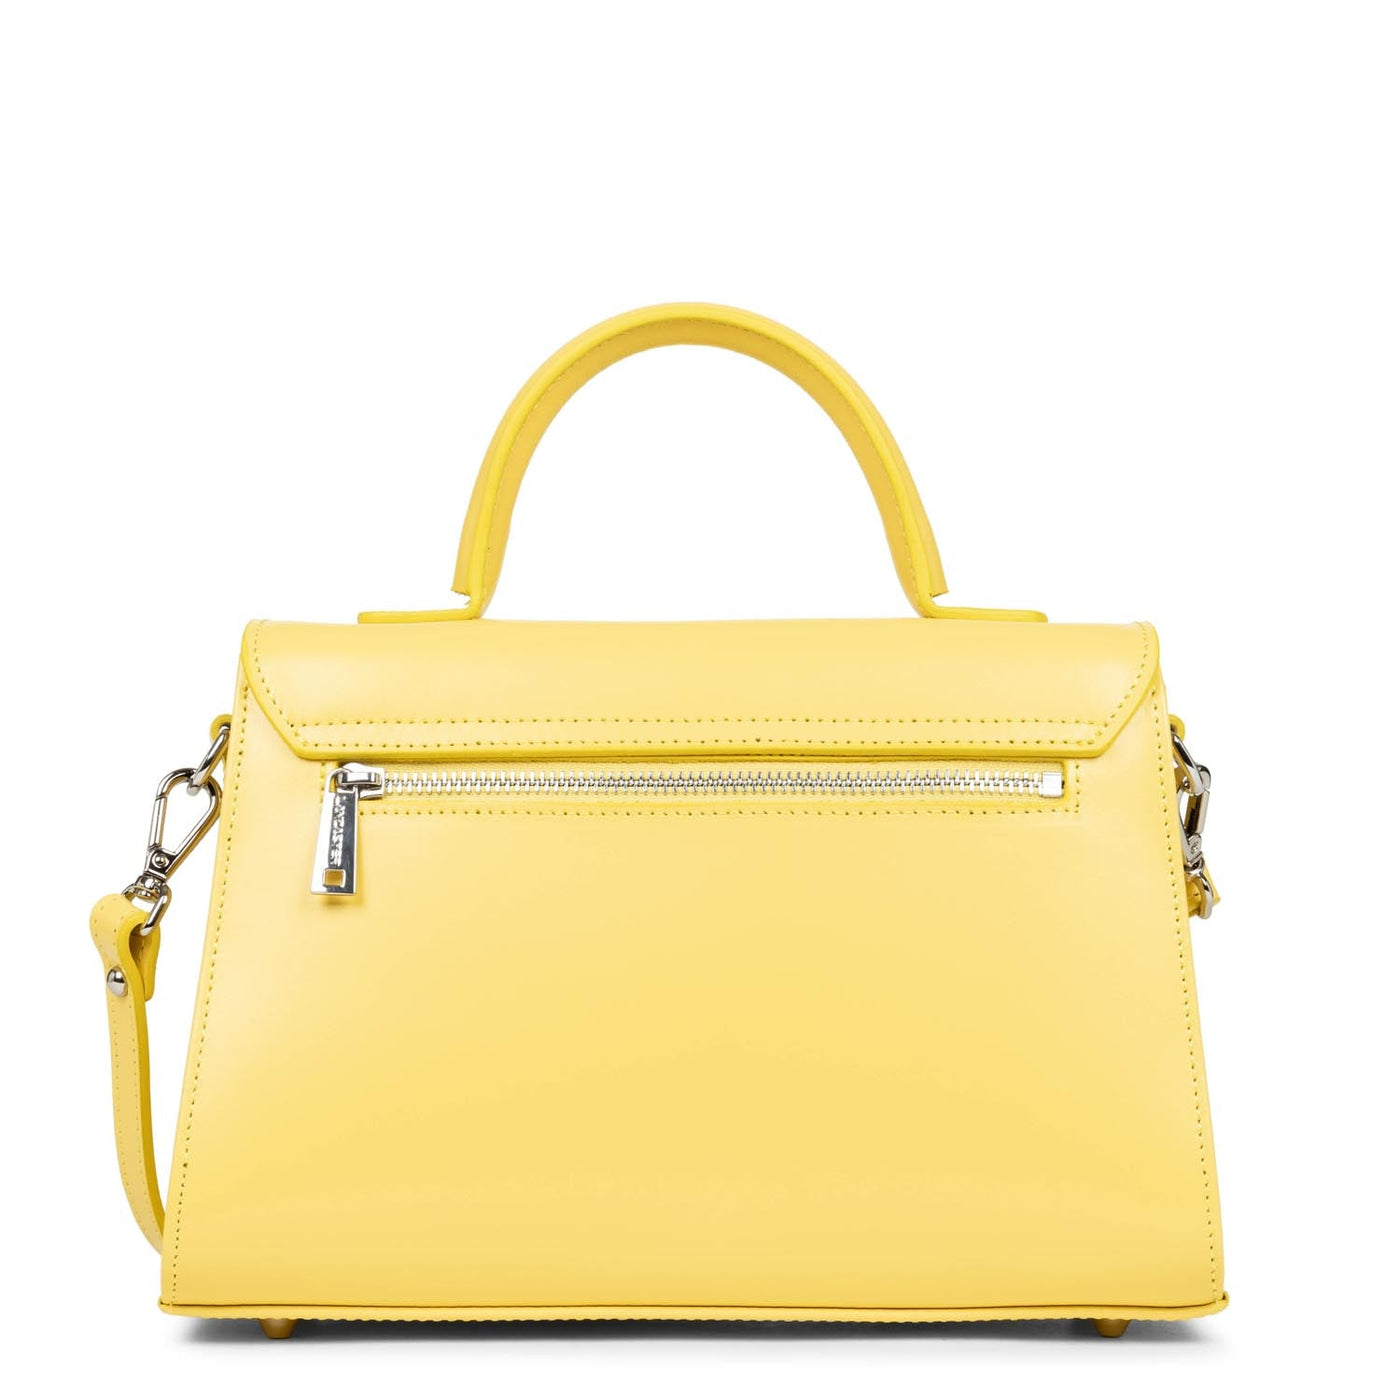 m handbag - suave even #couleur_poussin